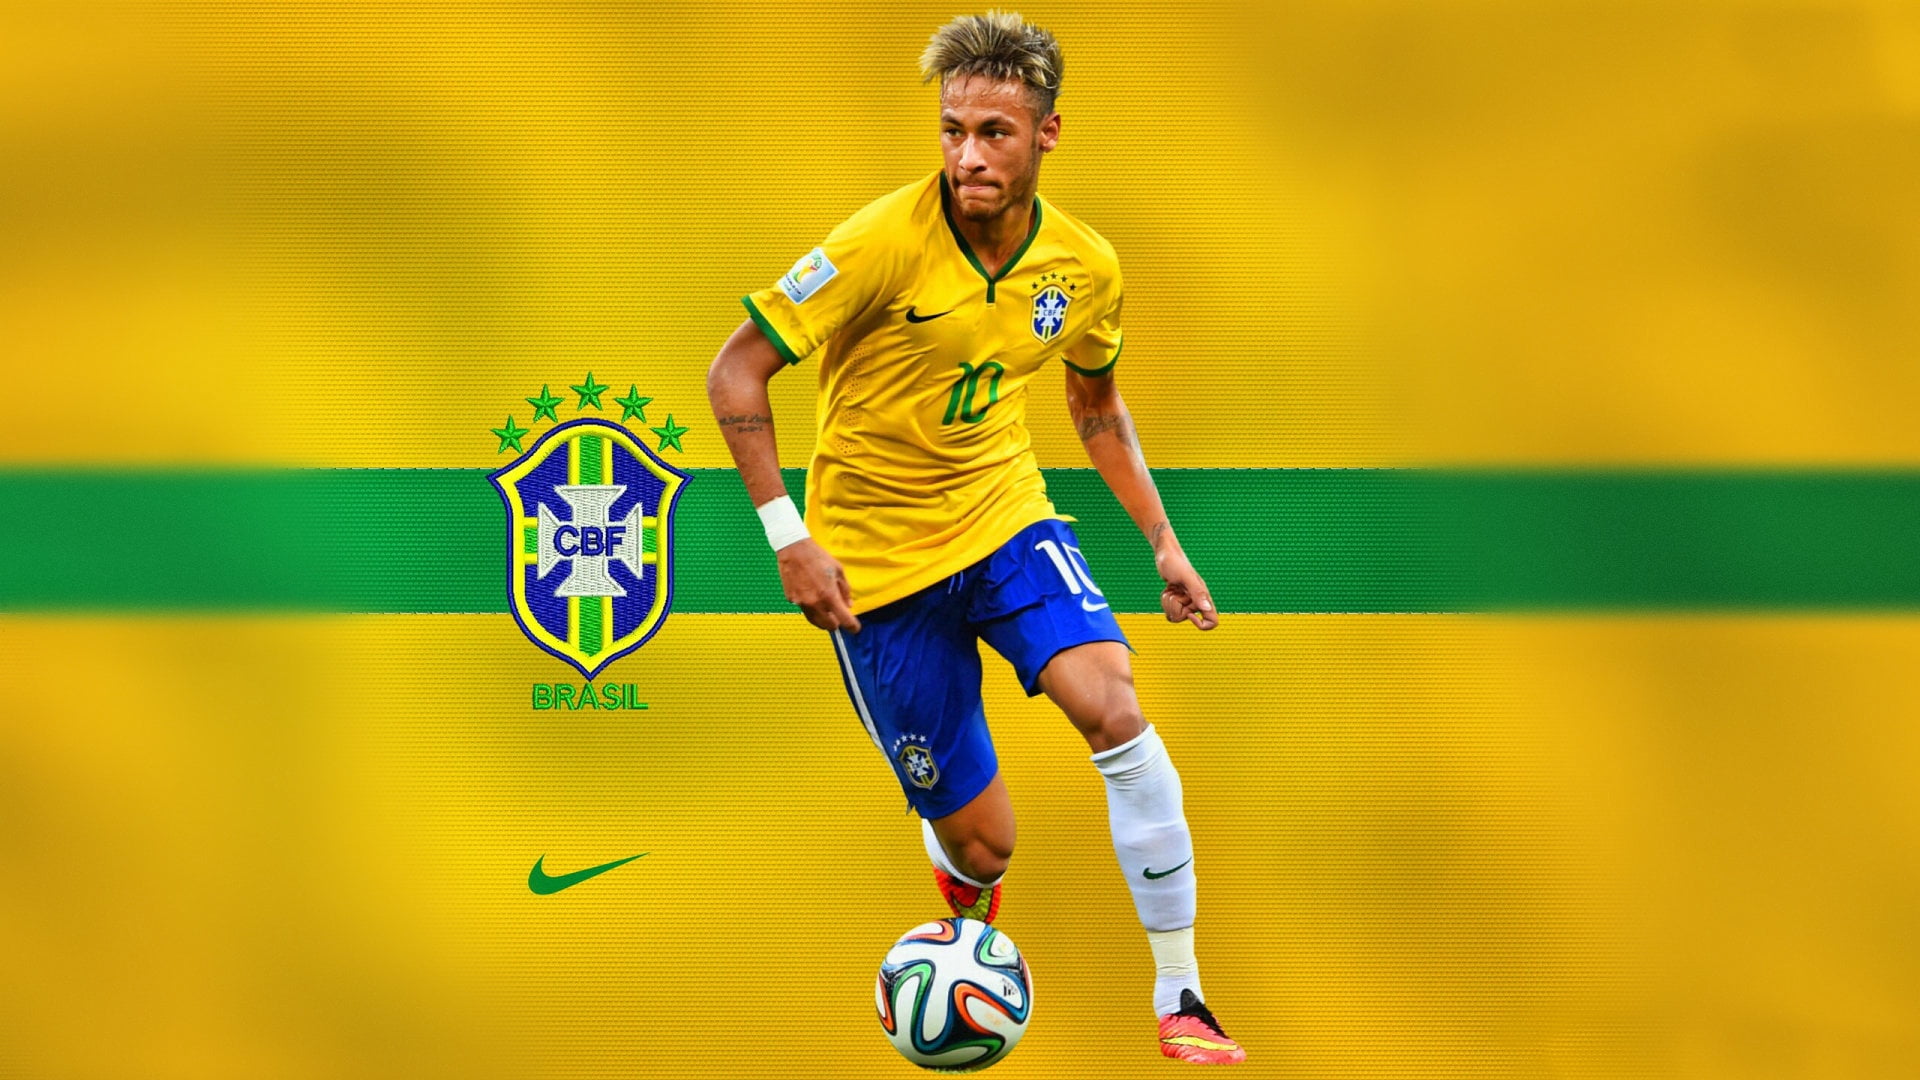 CBF Brasil soccer player wallpaper, neymar, barcelona, brazil